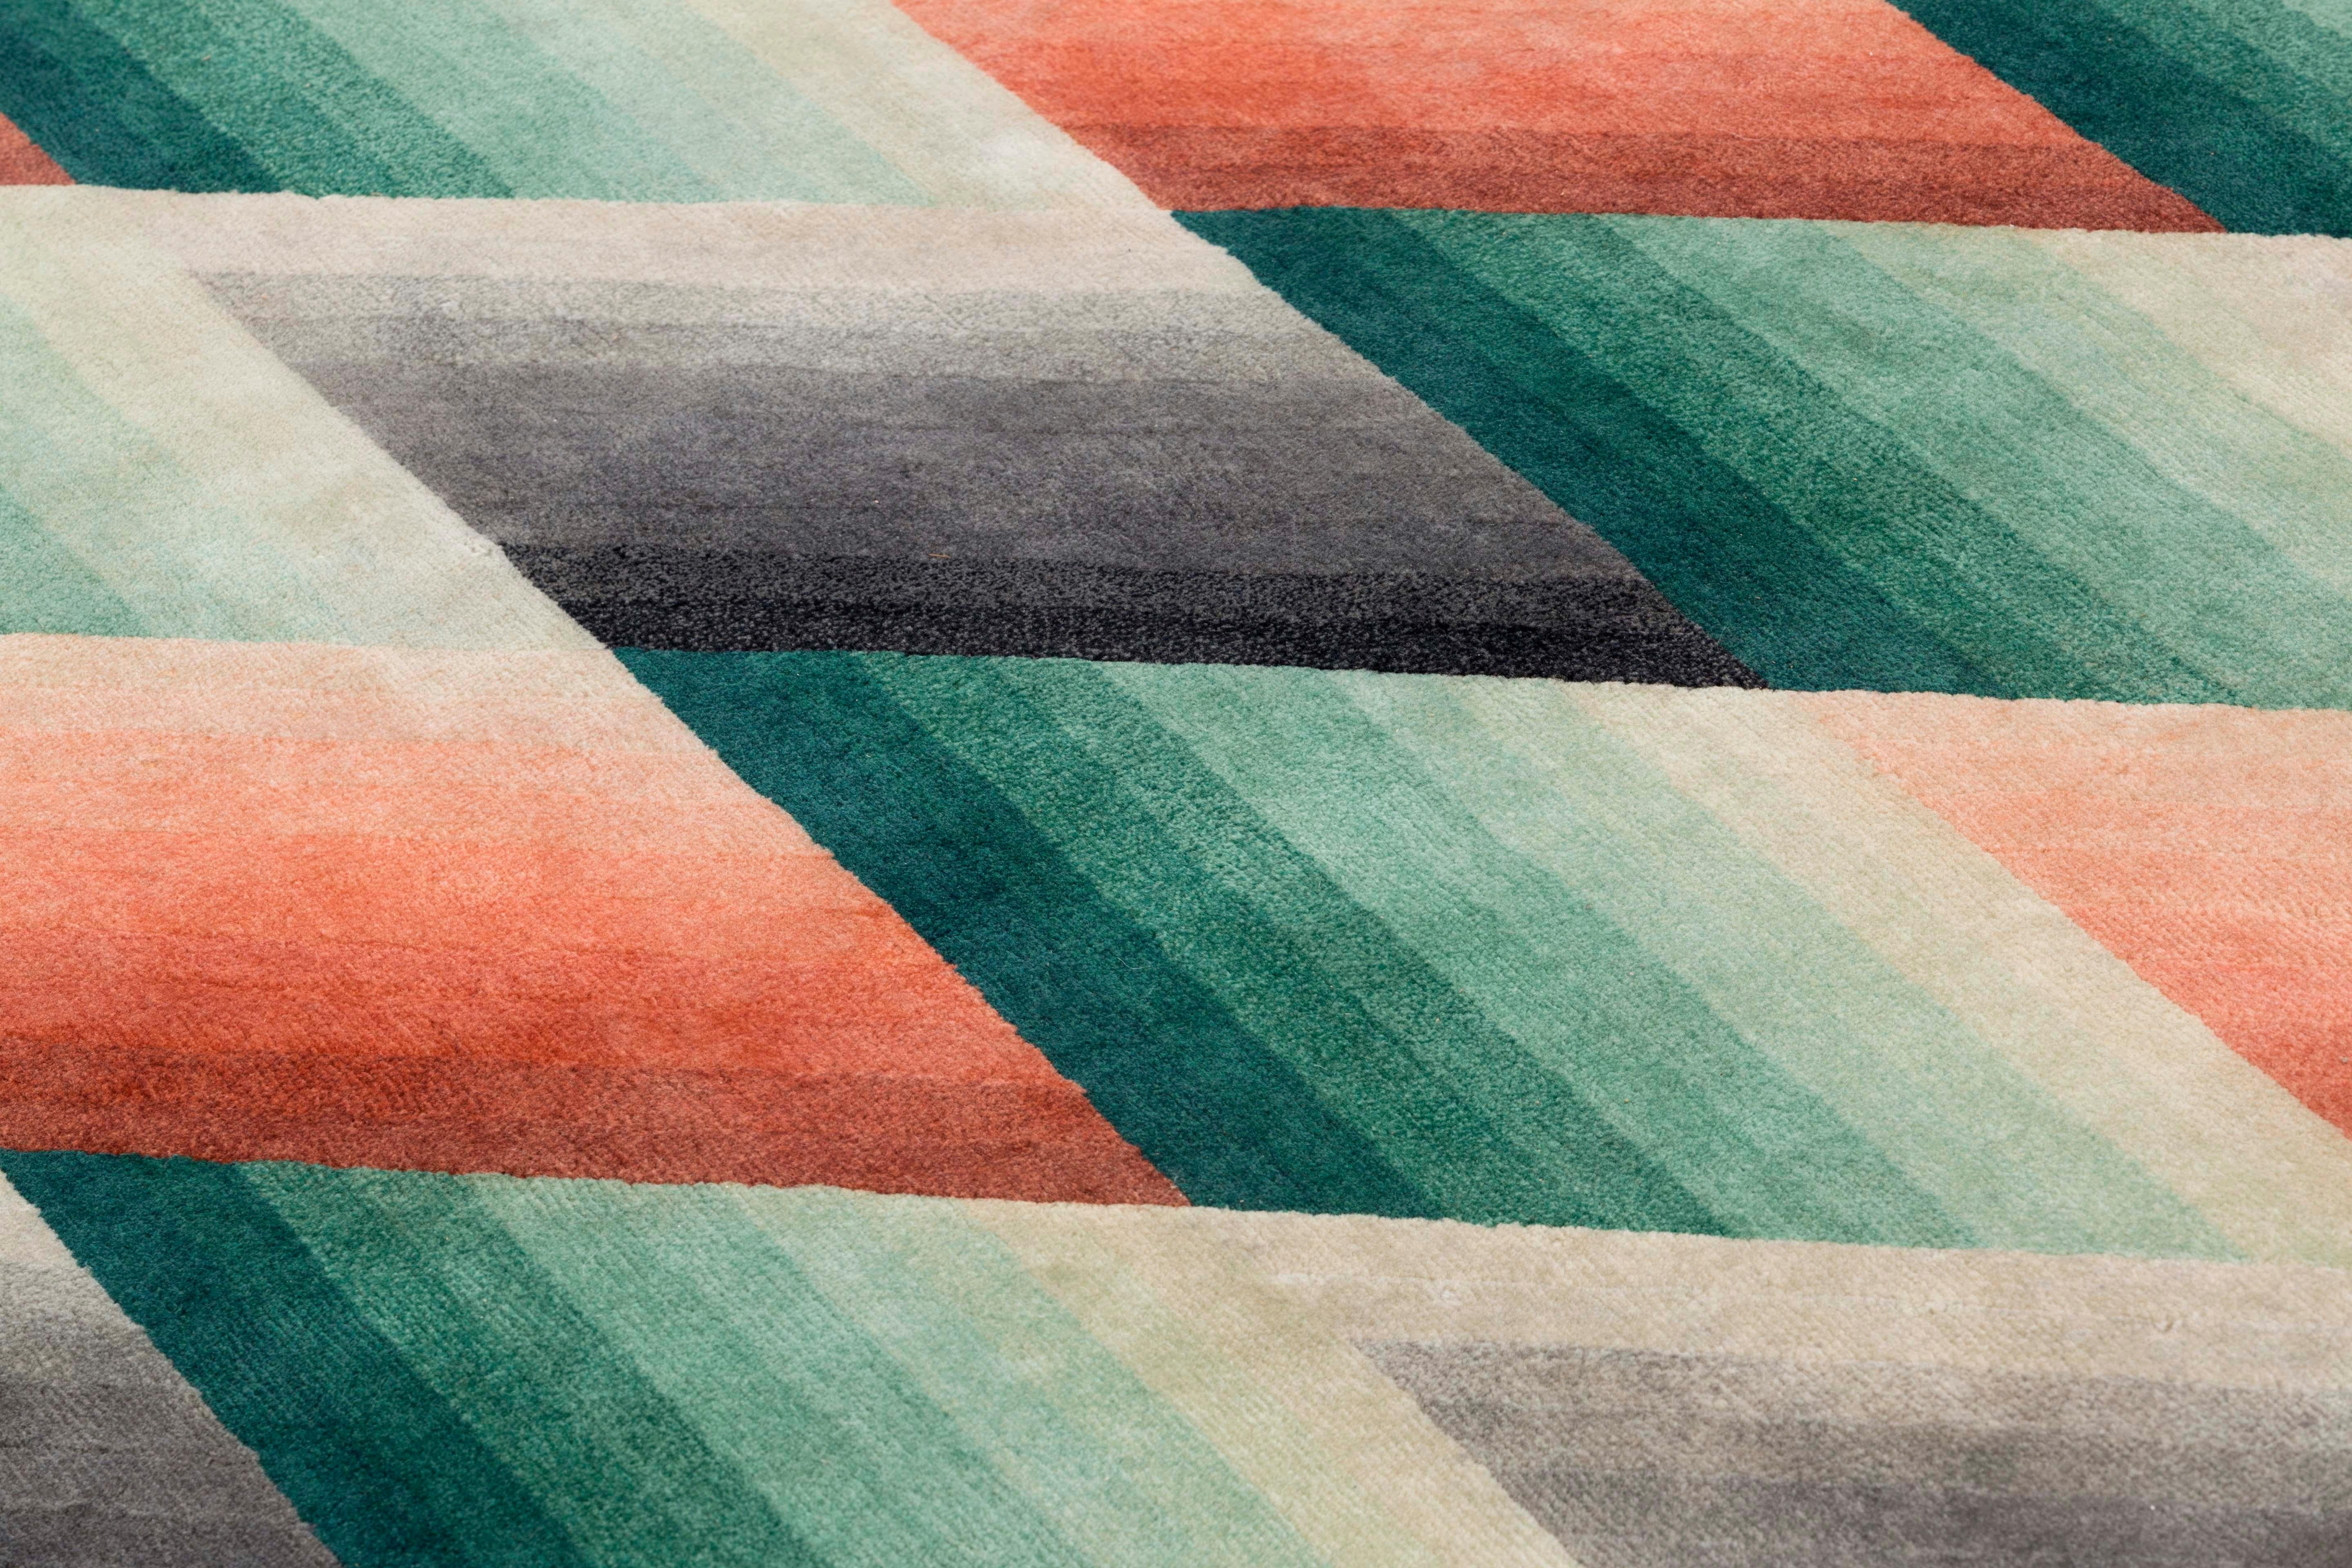 Patricia Urquiola kreiert einen weiteren modernen Accessoire-Klassiker. Mirage, die neue Teppichkollektion, die für GAN entworfen wurde, ist dazu bestimmt, eine geschätzte Ikone zu werden. Farbe, Geometrie und Überlagerung werden bei diesem Teppich